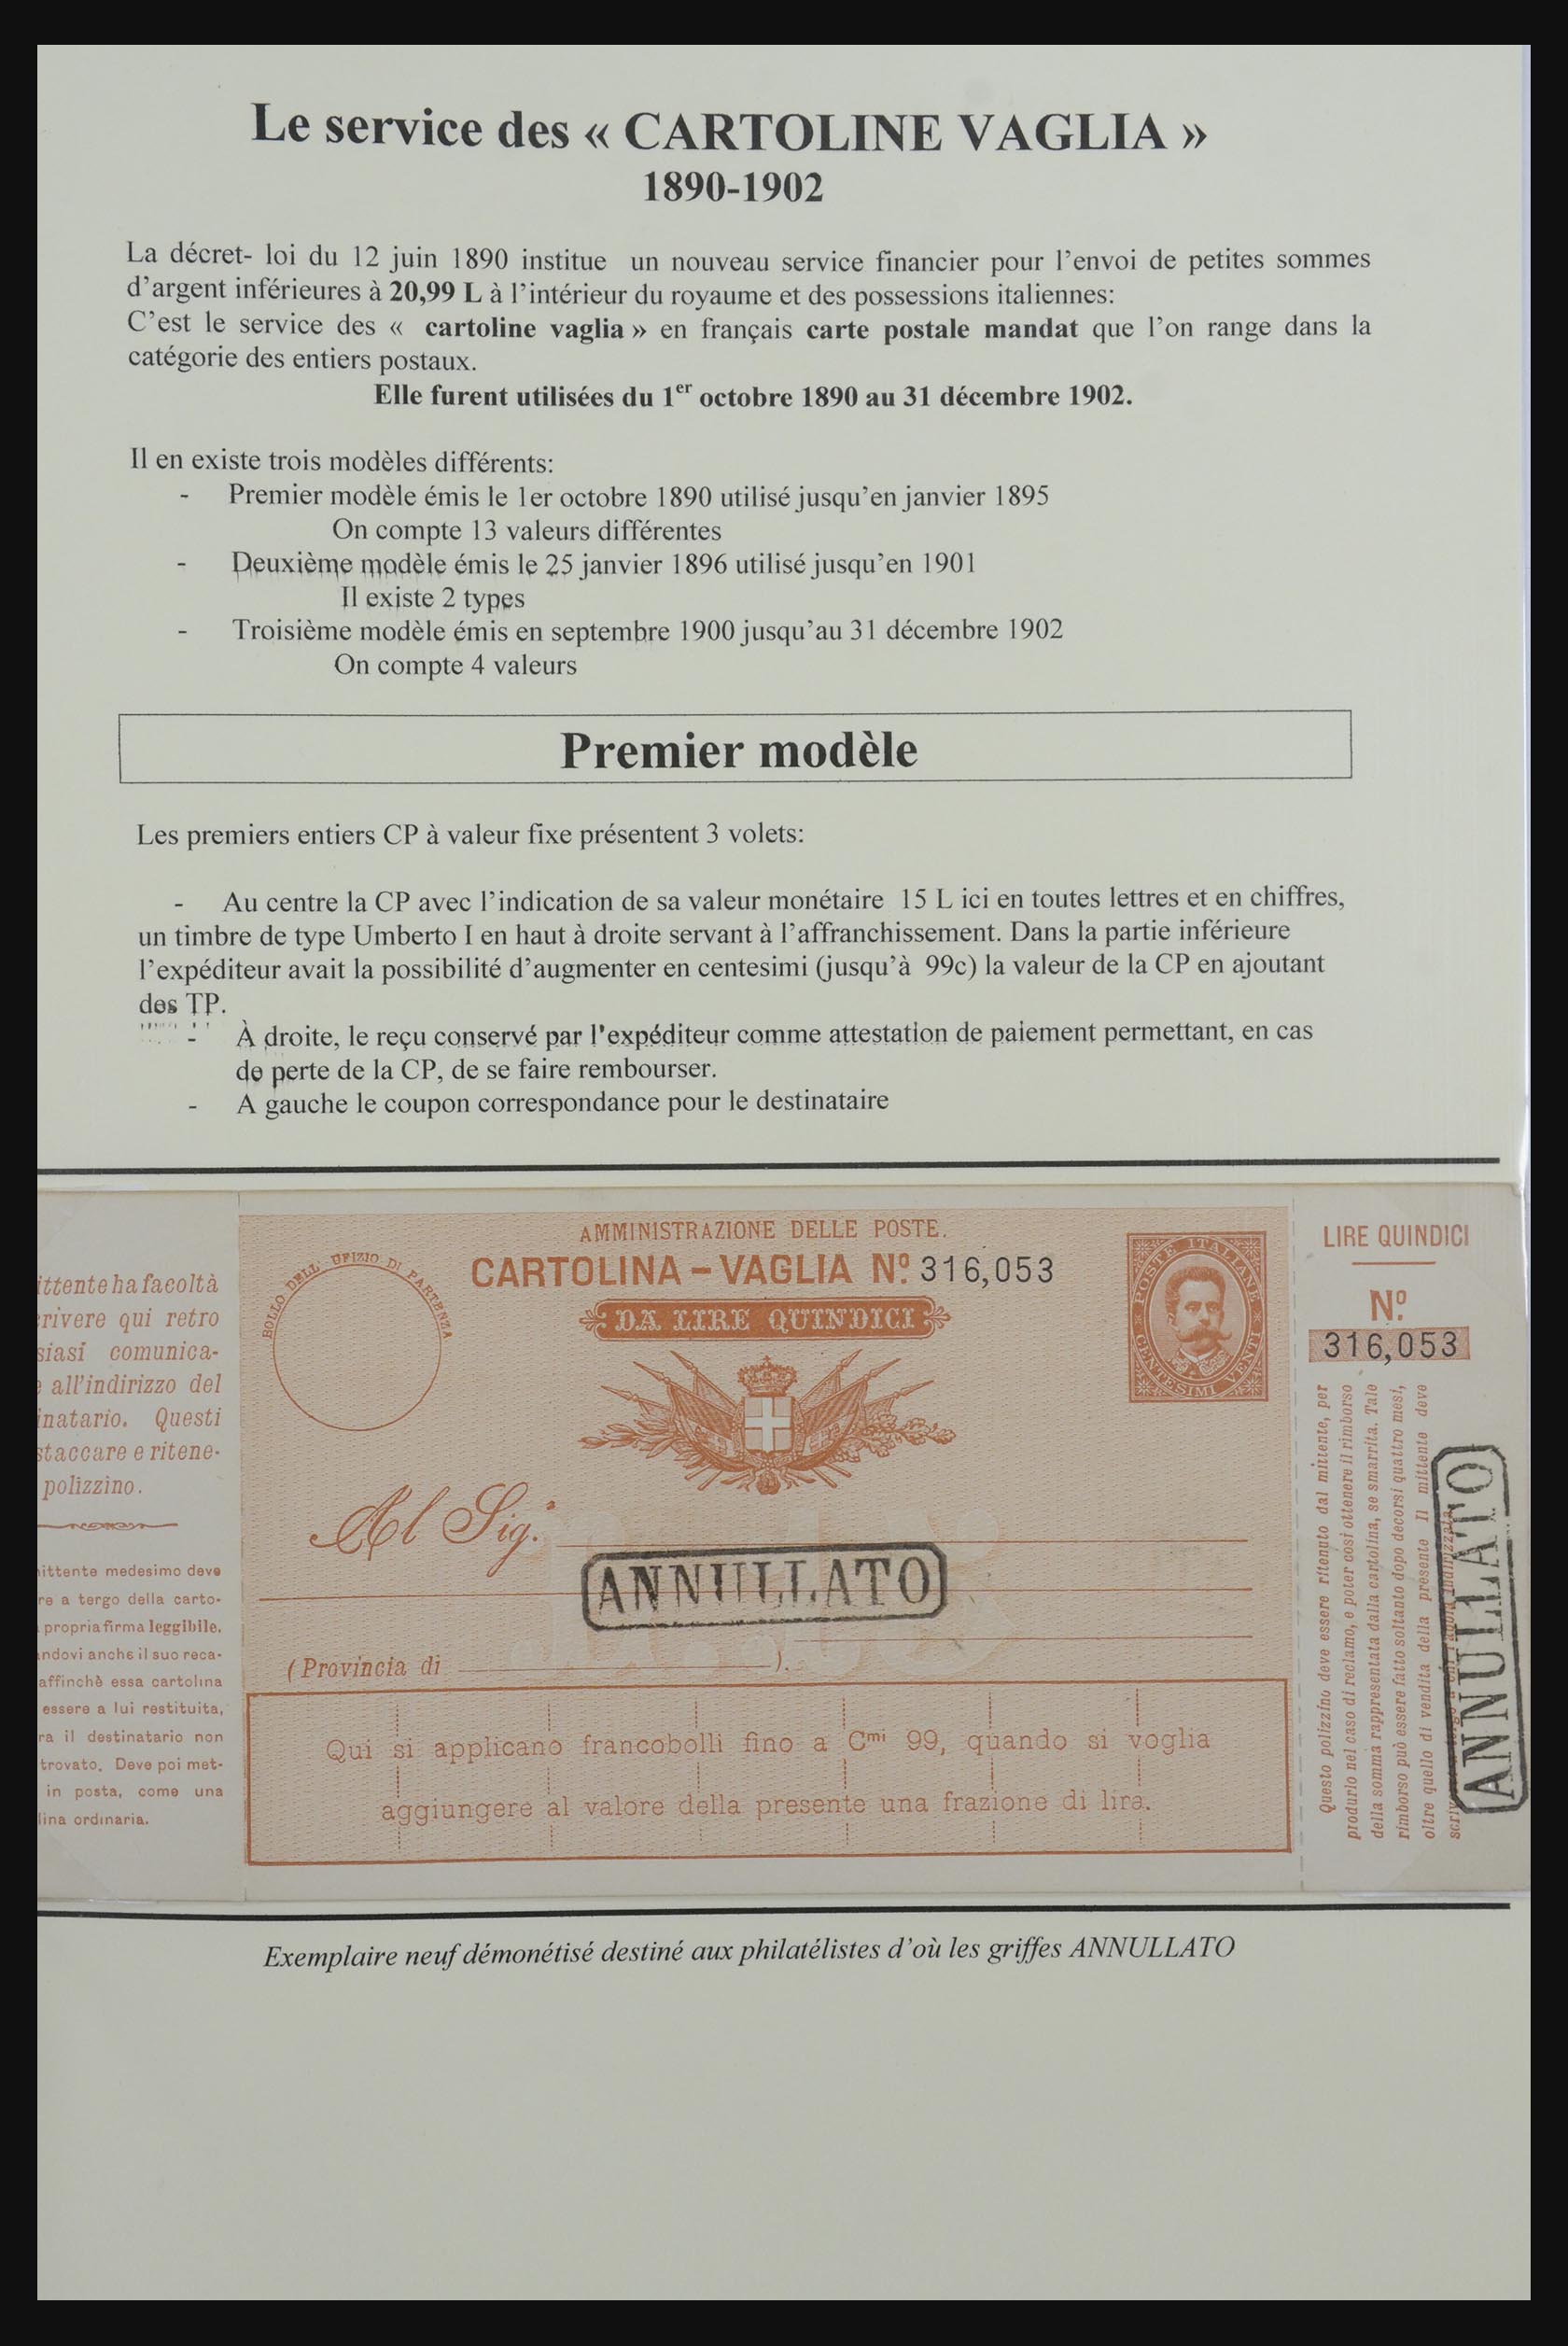 32243 001 - 32243 Italië postbewijskaarten 1892-1902.